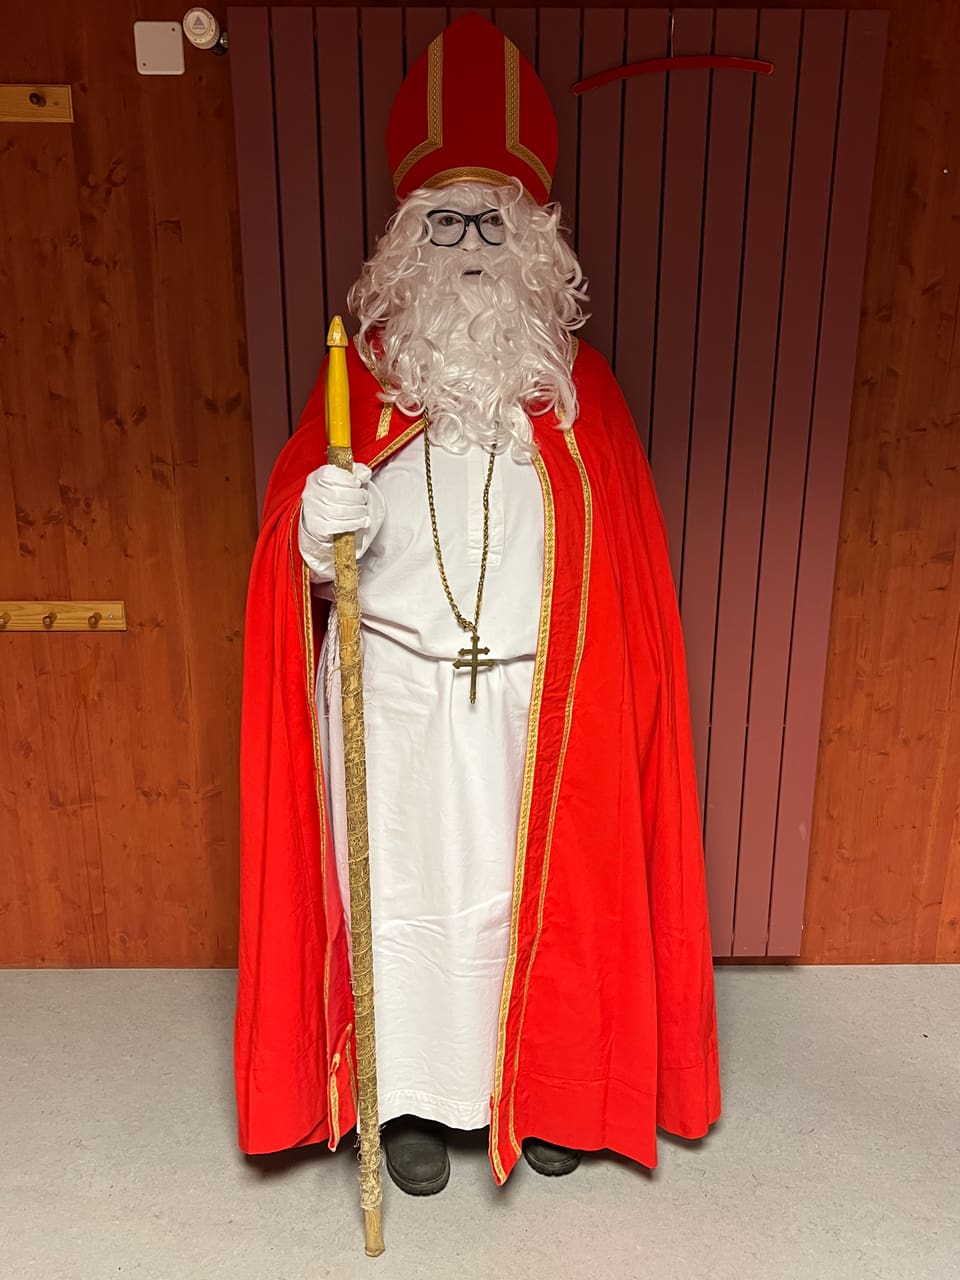 Weihnachtsmann in seiner vollen Montur posiert für ein Bild. Rote Robe, weisses Kleid, Stock, weisse Haare und Bart, Hut